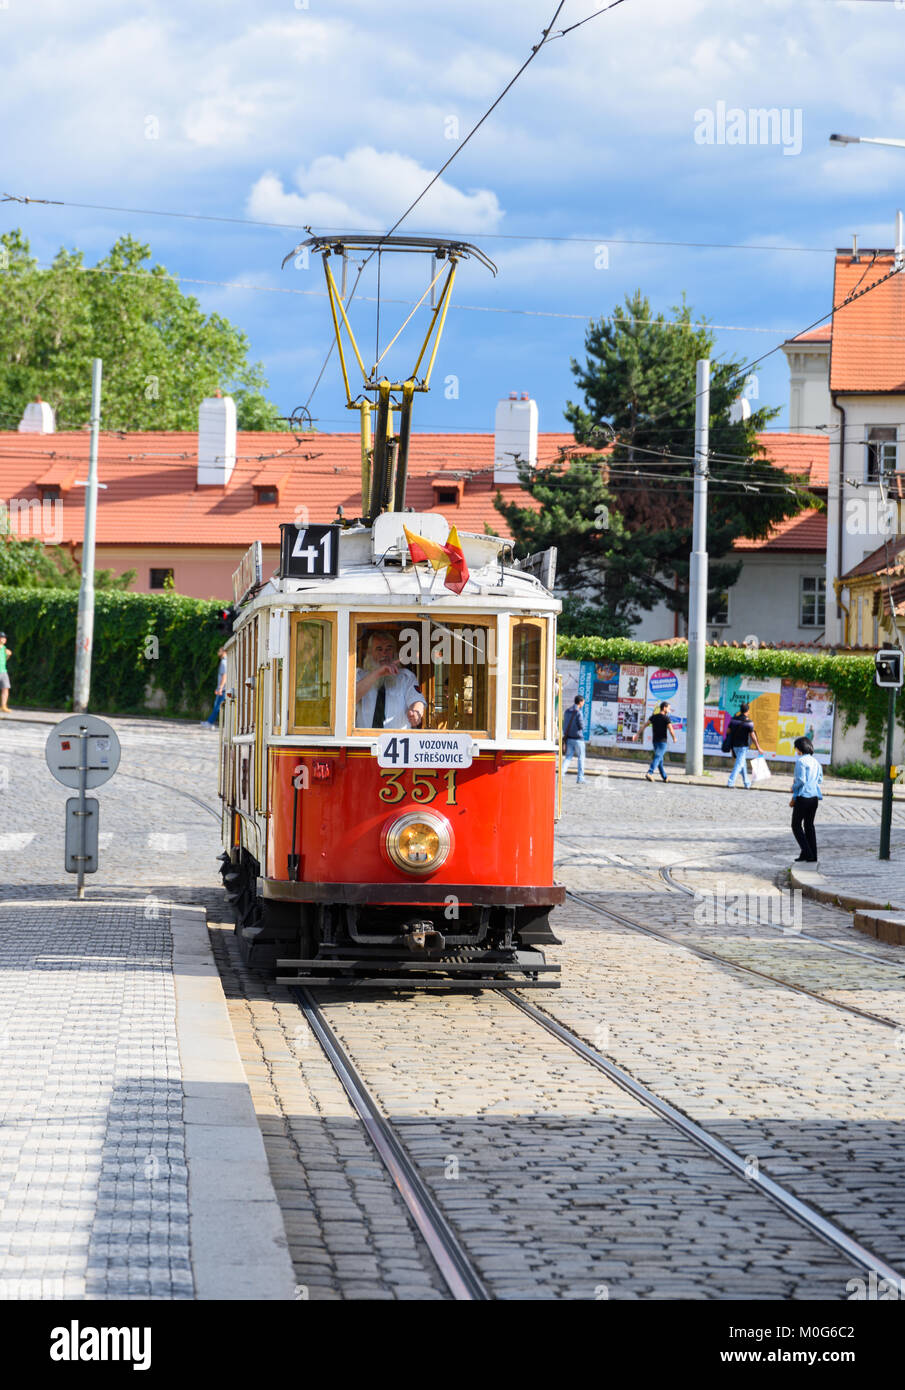 Prag, tschechische Republik - 1. Juli 2017: historische Prager Museum Straßenbahn Linie 41 und eine alte Straßenbahn Fahrer auf einer gepflasterten Straße in der Mala Strana. Stockfoto